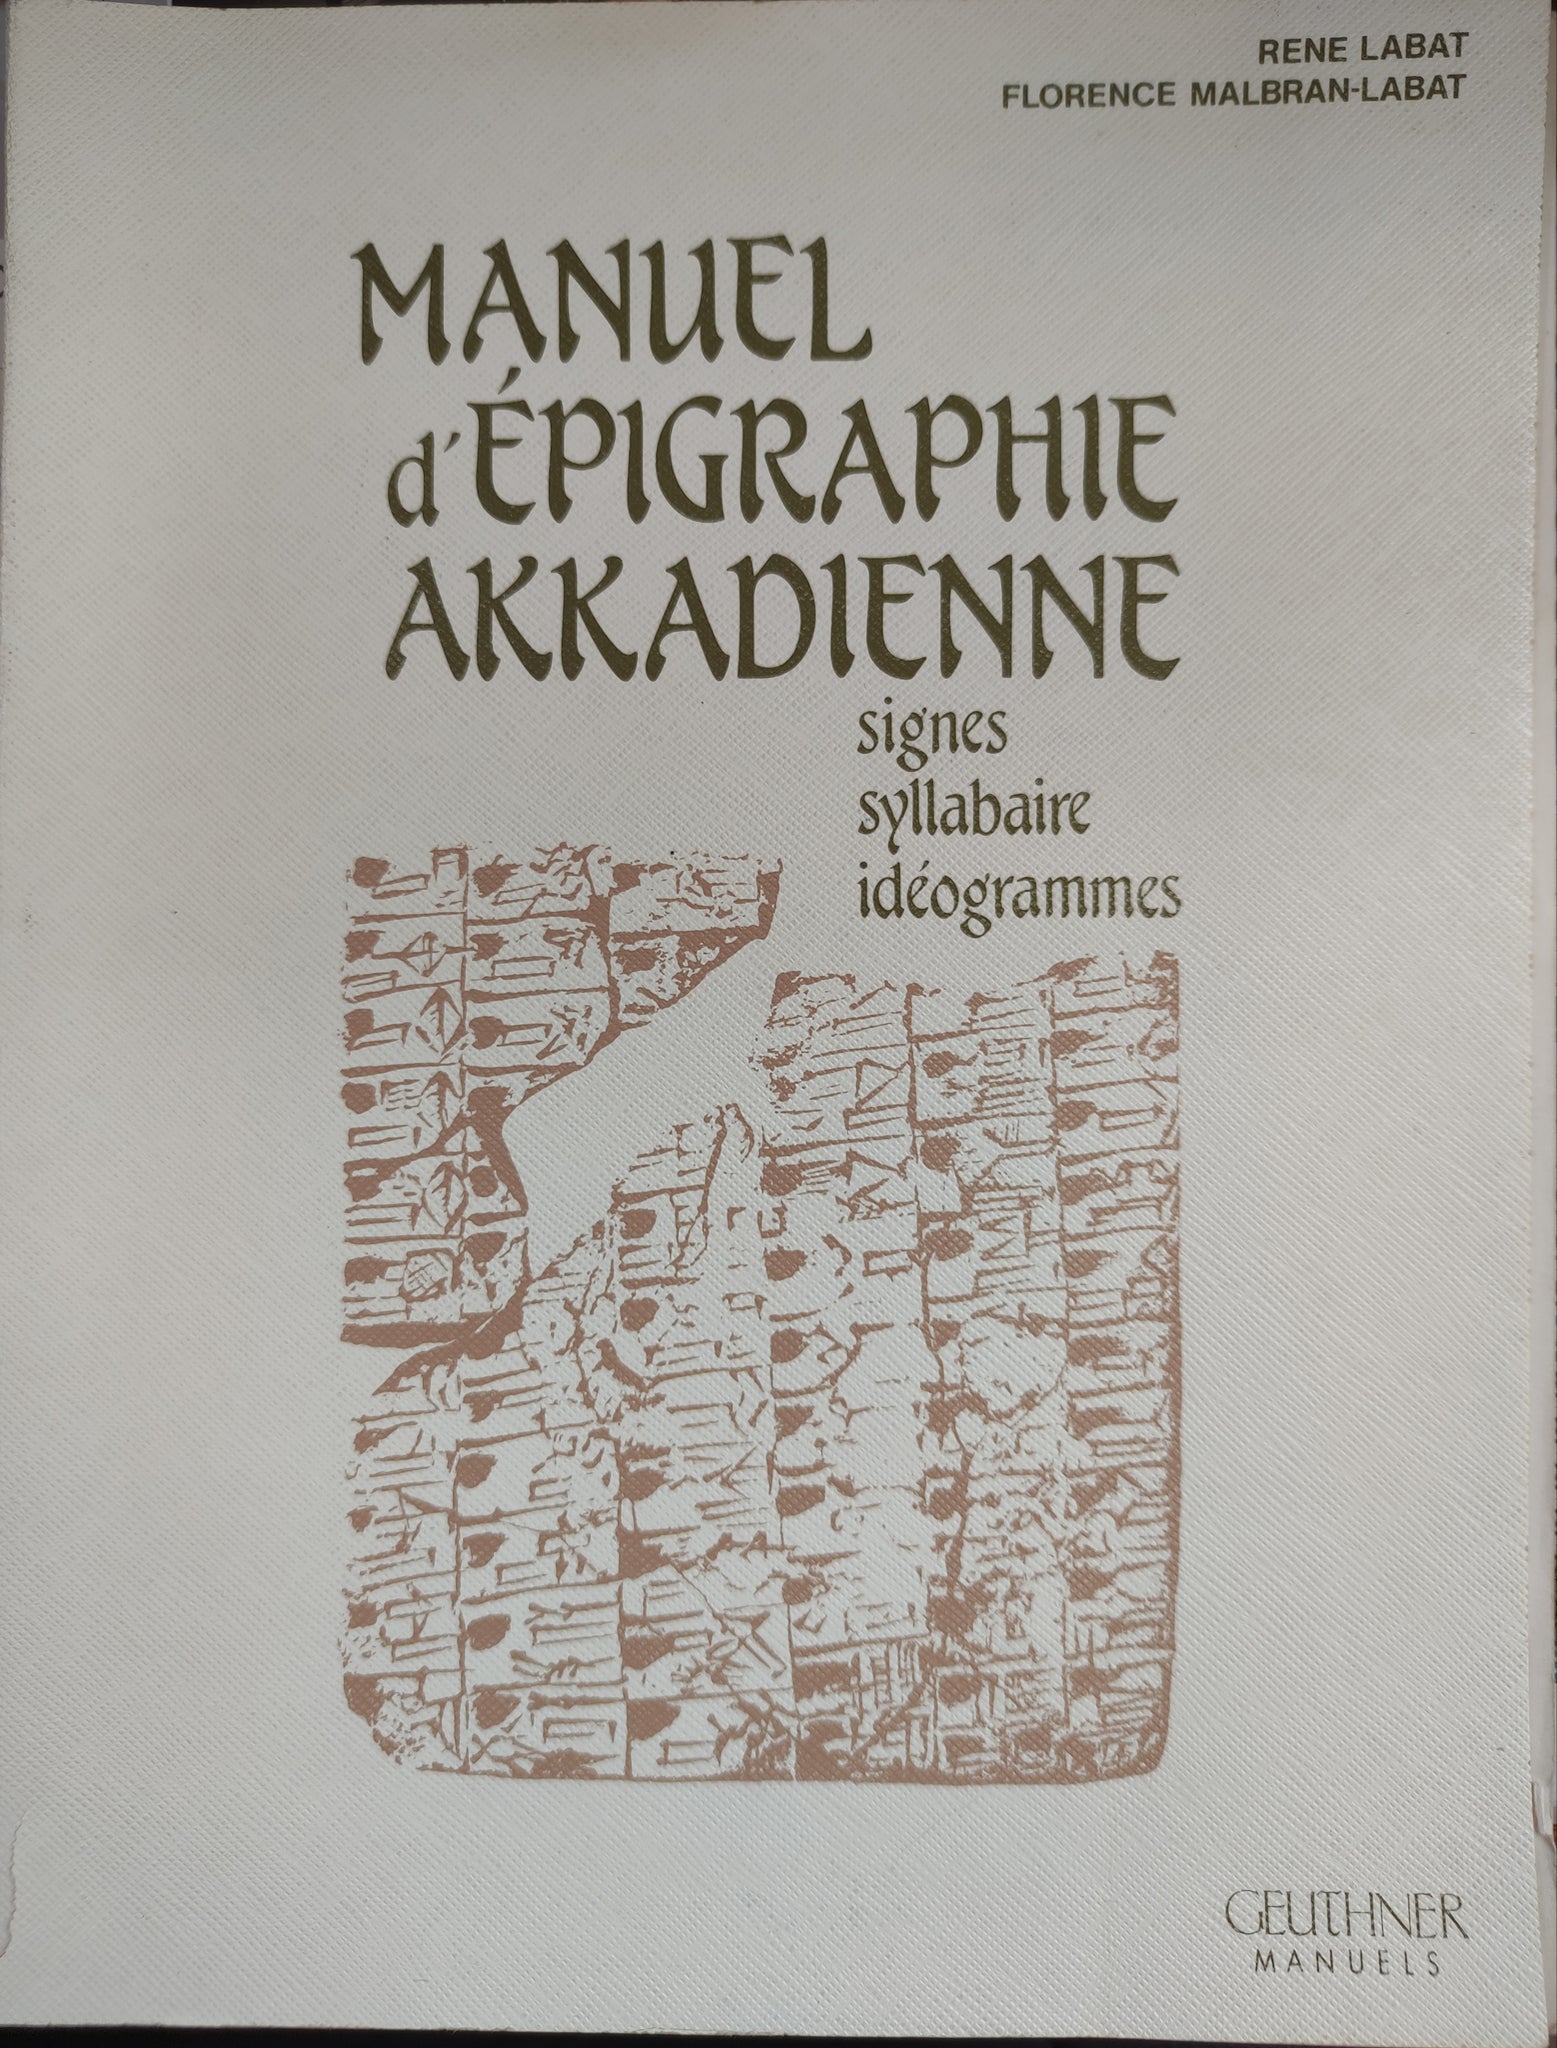 Manuel d'épigraphie akkadienne (signes, syllabaire, idéogrammes)